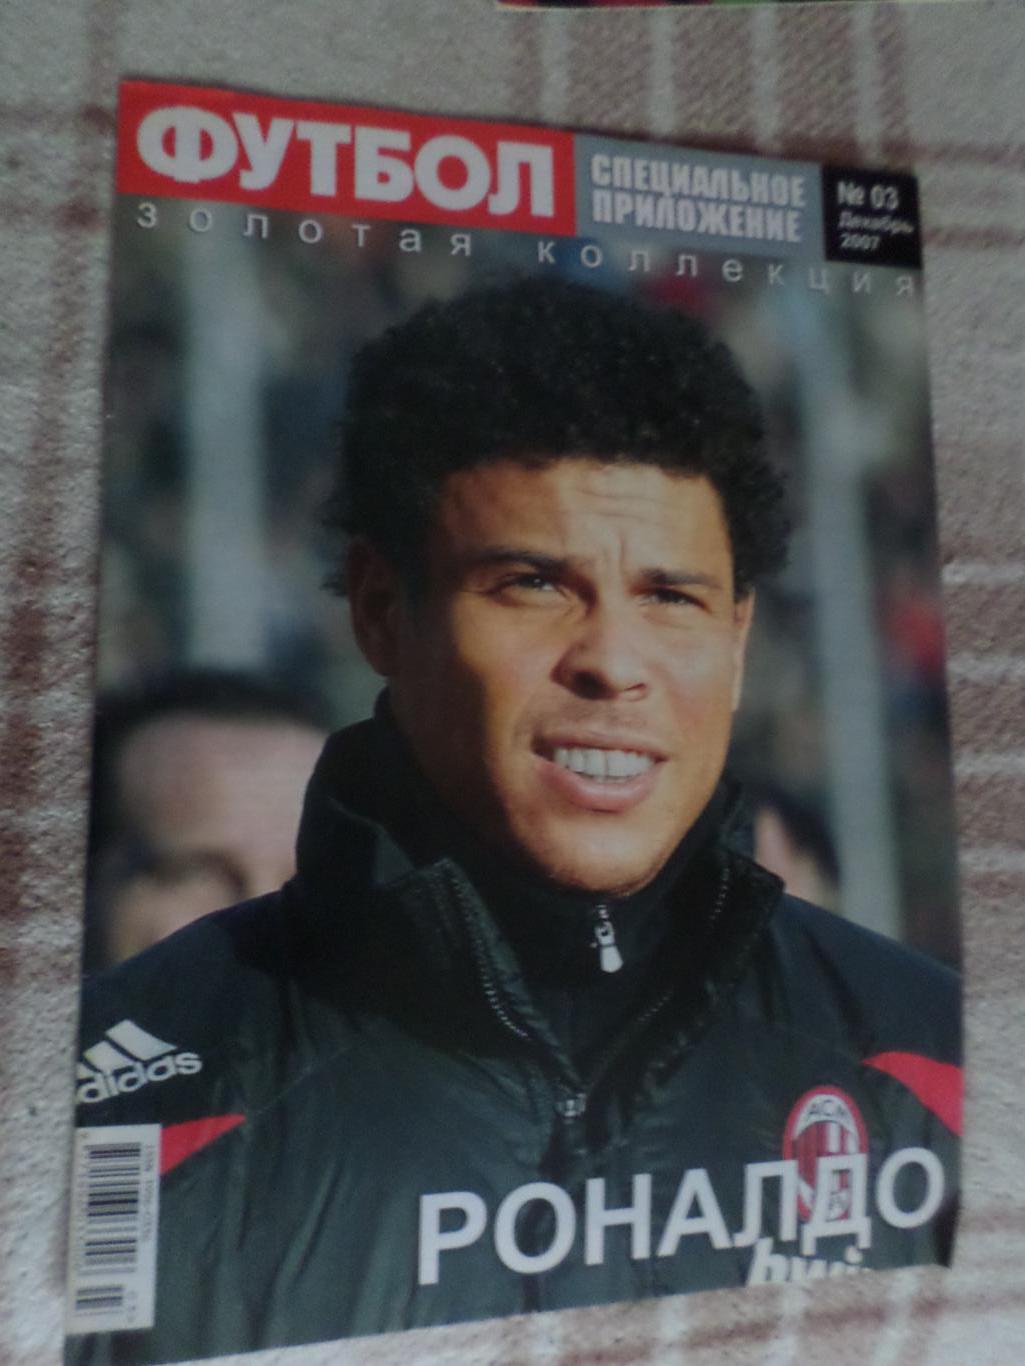 Еженедельник Футбол (Киев) спецвыпуск Великие игроки № 3 2007 Стрельцов Роналдо 1